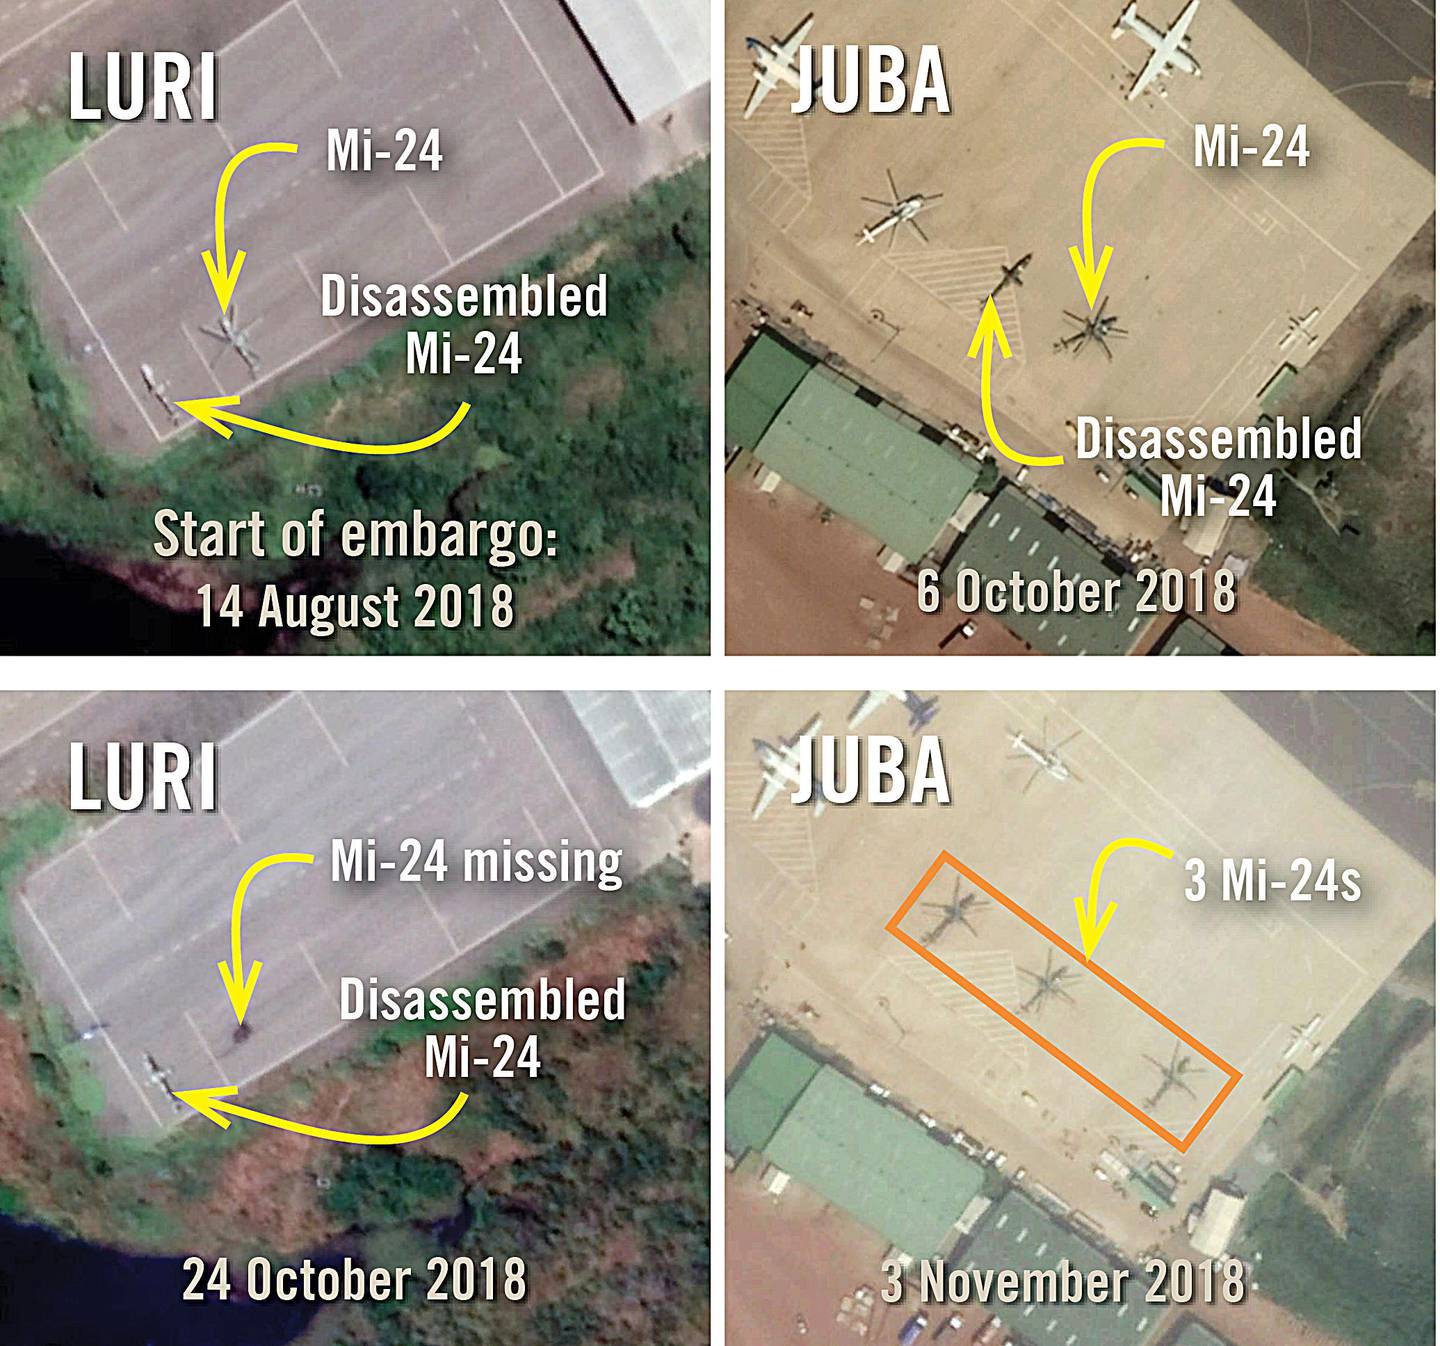 Ulike satellittbilder viser hvordan myndighetenes kamphelikoptre Mi-24 er blitt satt i stand og har vært på vingene, i strid med våpenembargoen.